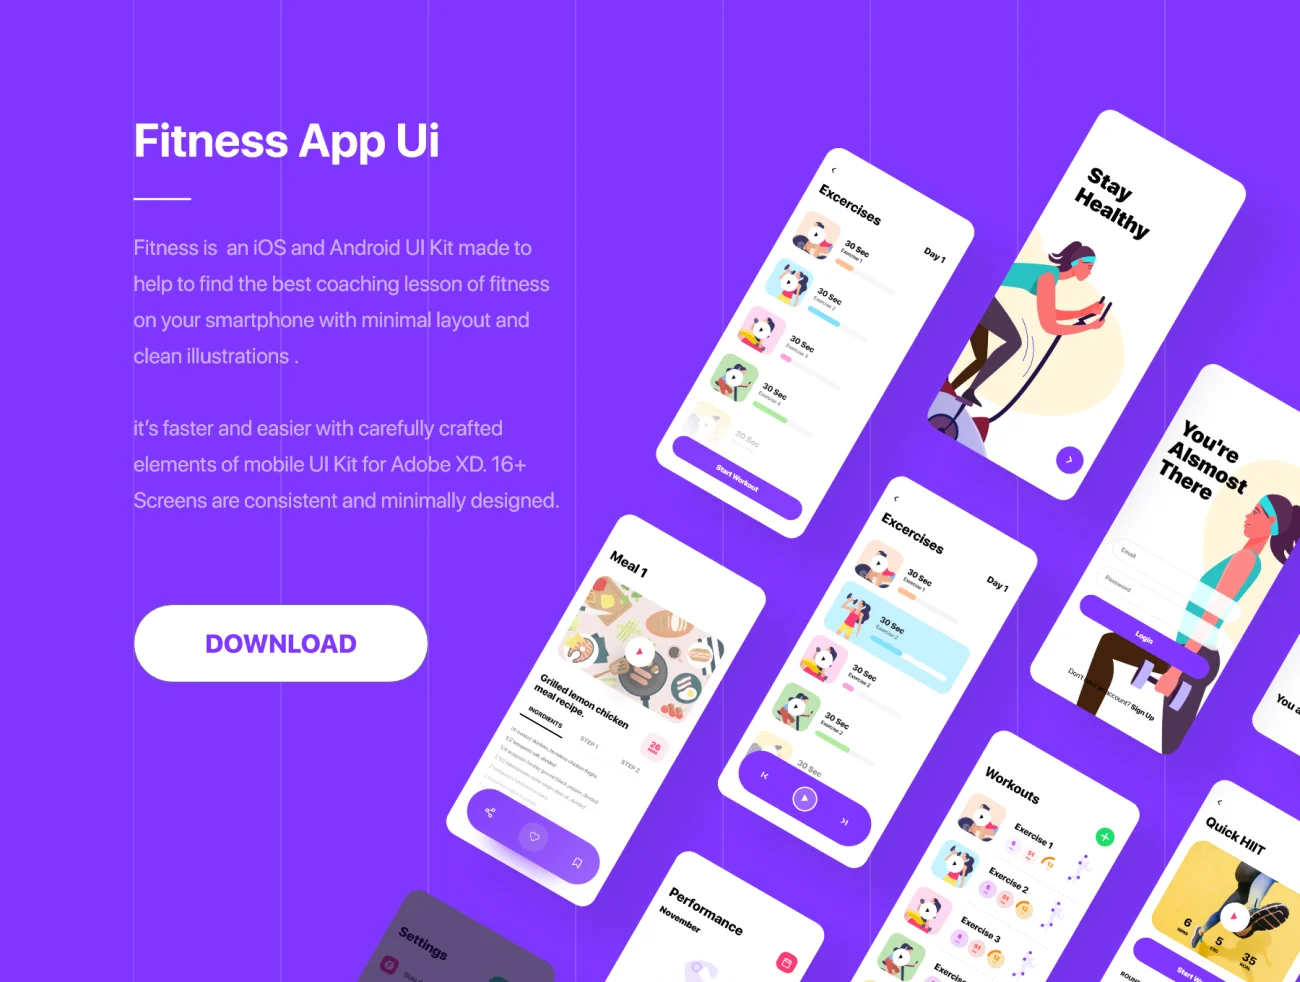 Fitness App Ui 运动健身app应用界面设计套件和矢量运动人物插画-UI/UX、人物插画、场景插画、插画、运动健身-到位啦UI